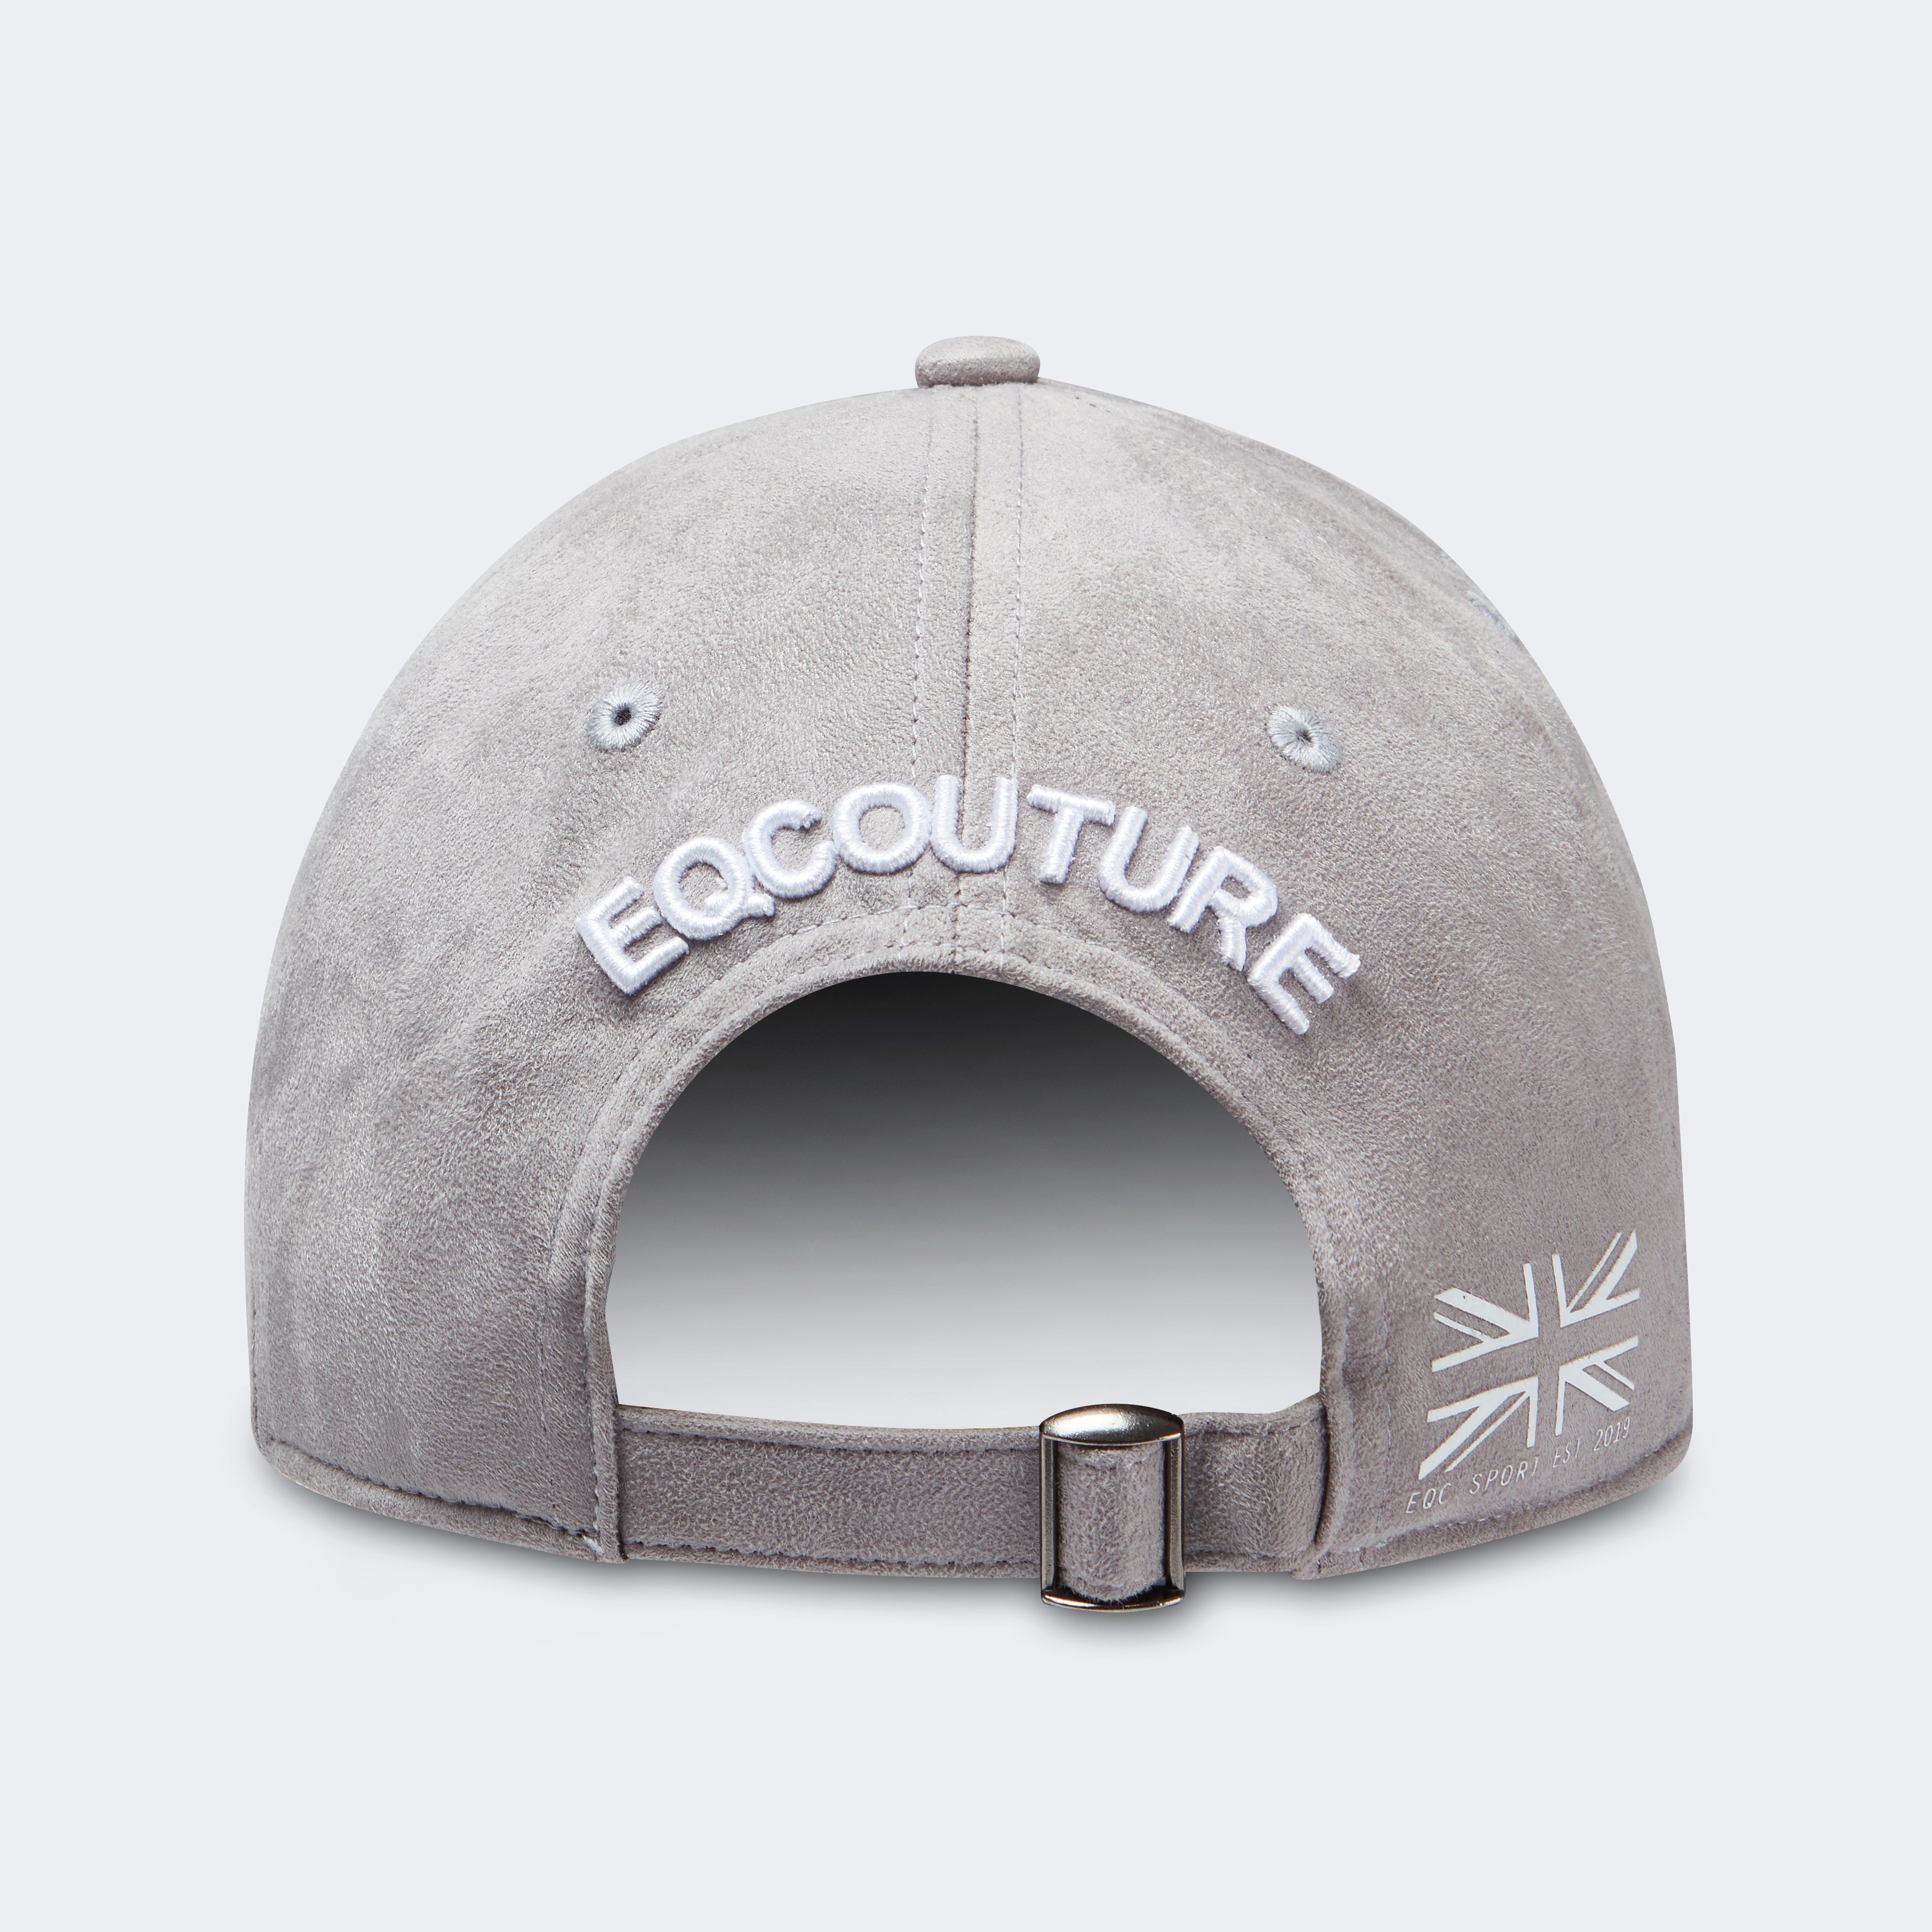 Exclusive Cap / Hat 'Royale' - Grey Suede